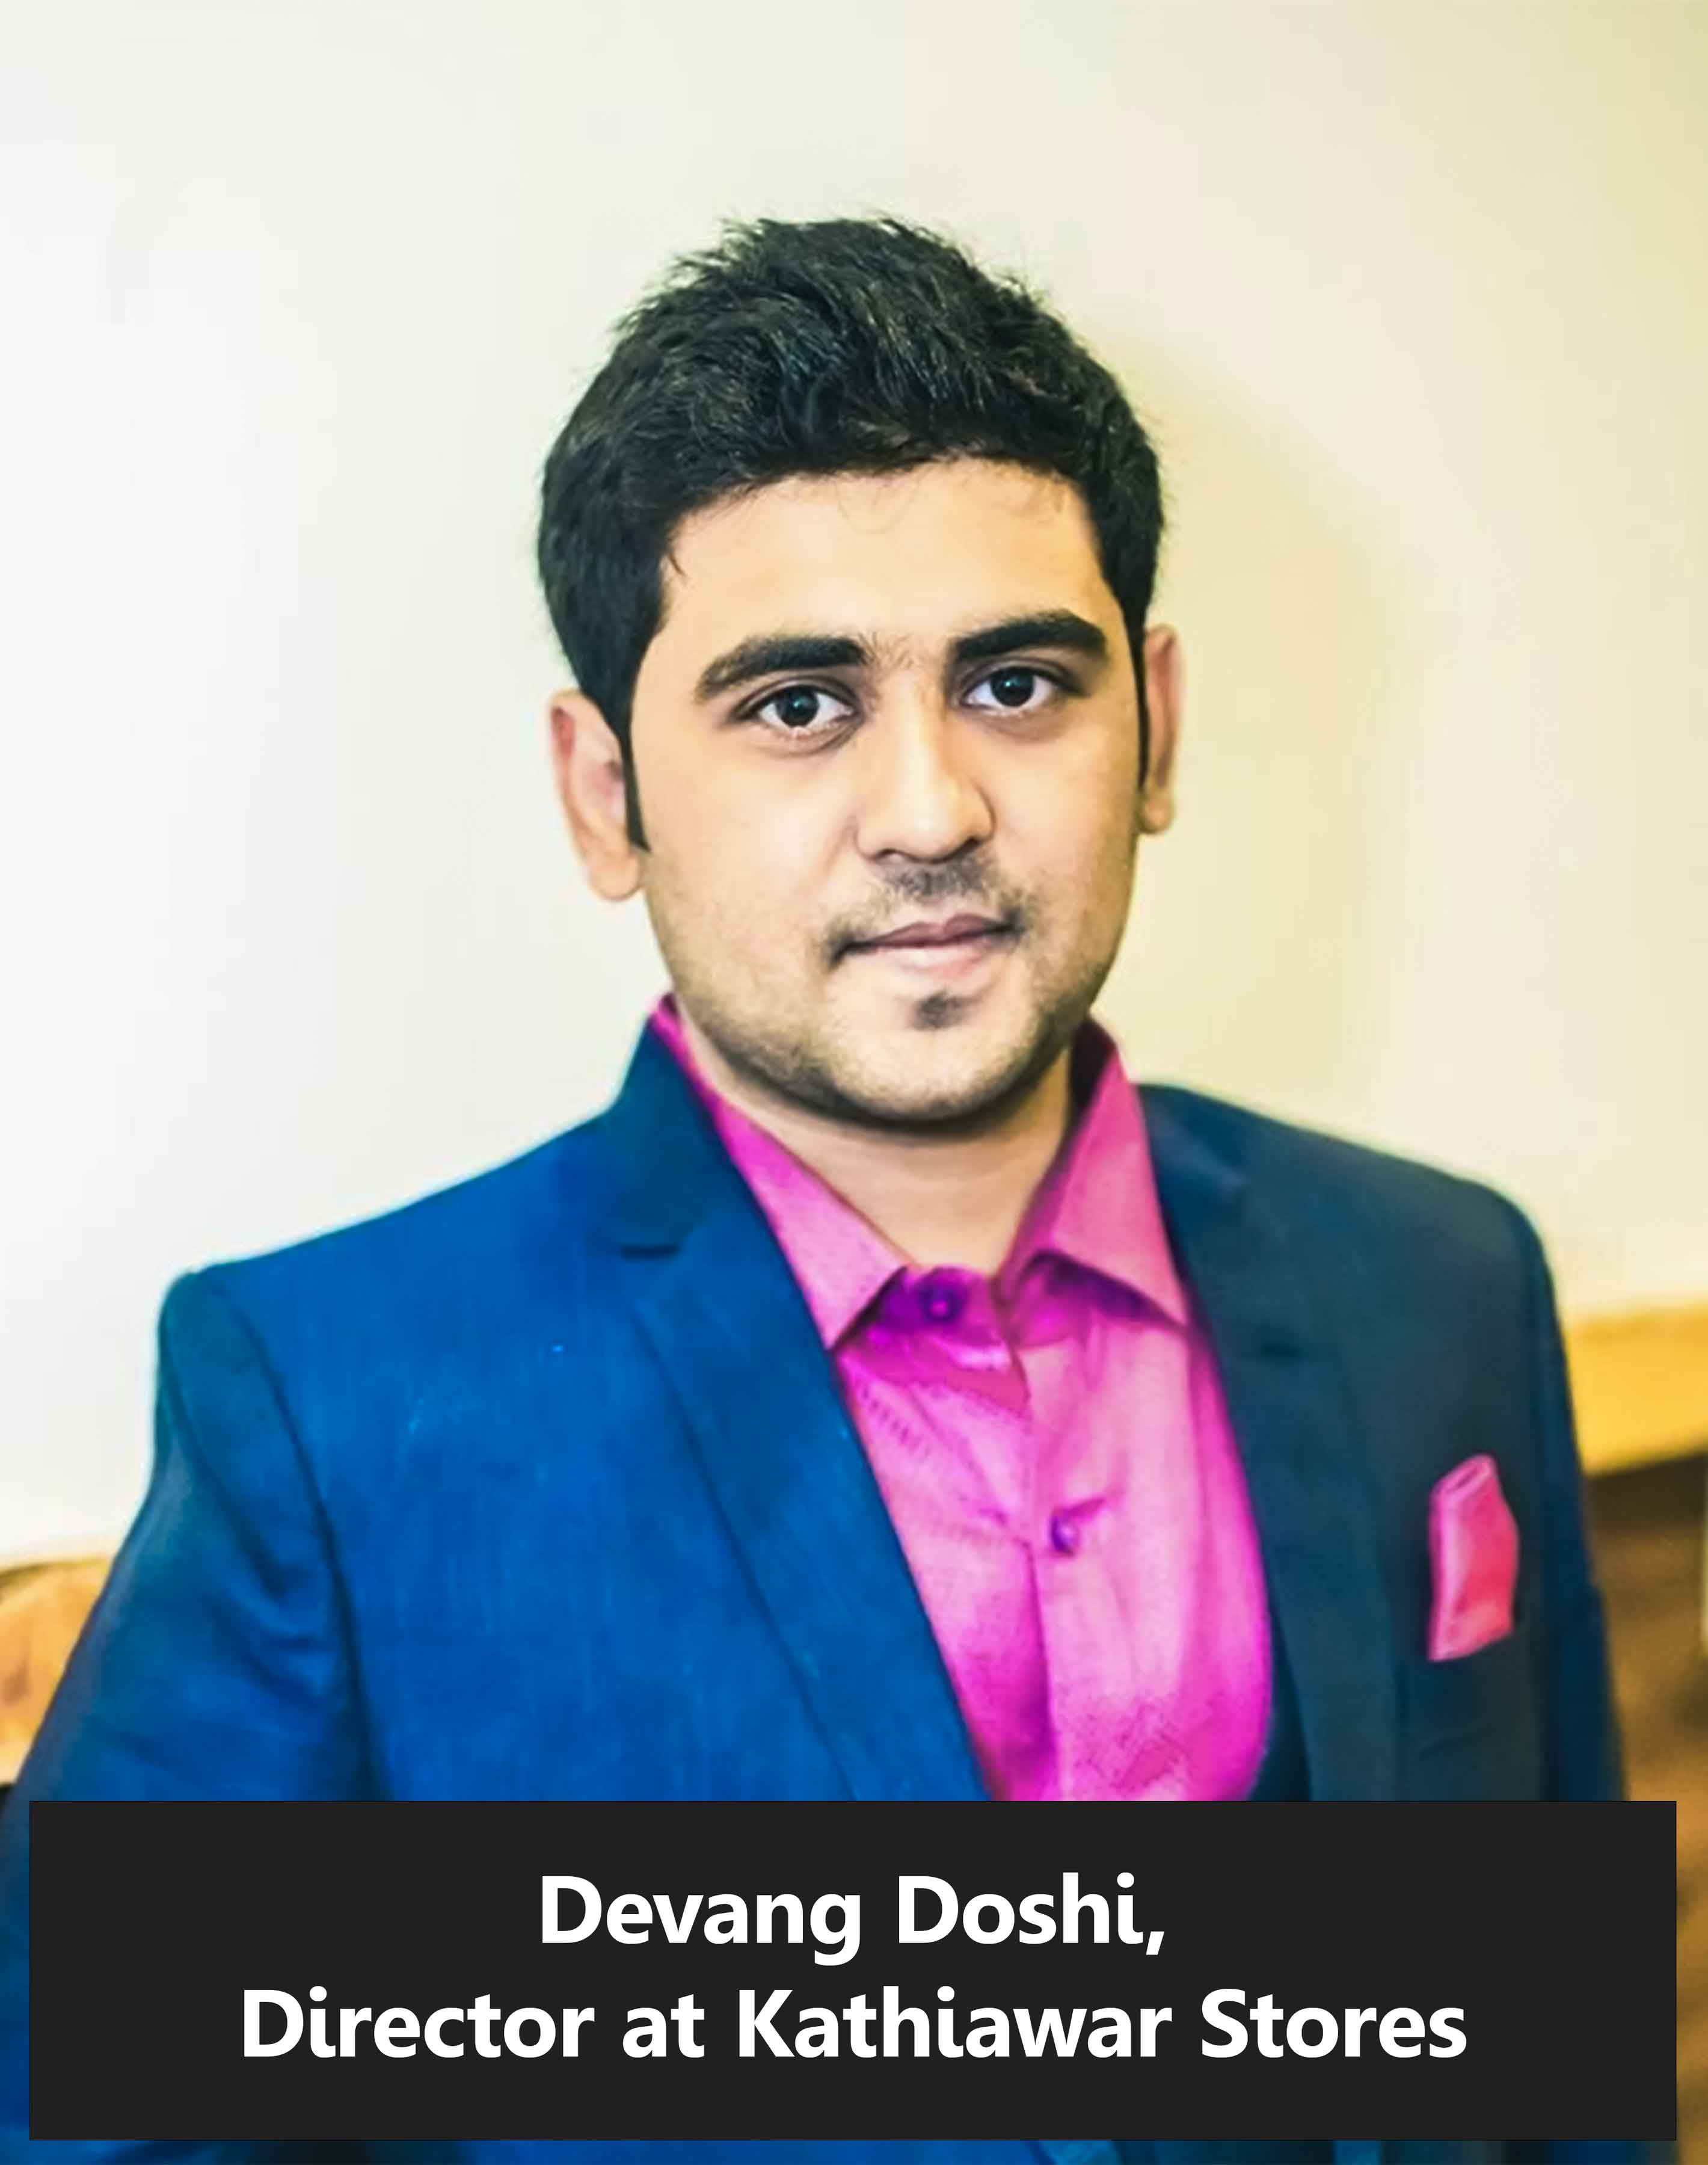 Devang doshi director at Kathiawar stores